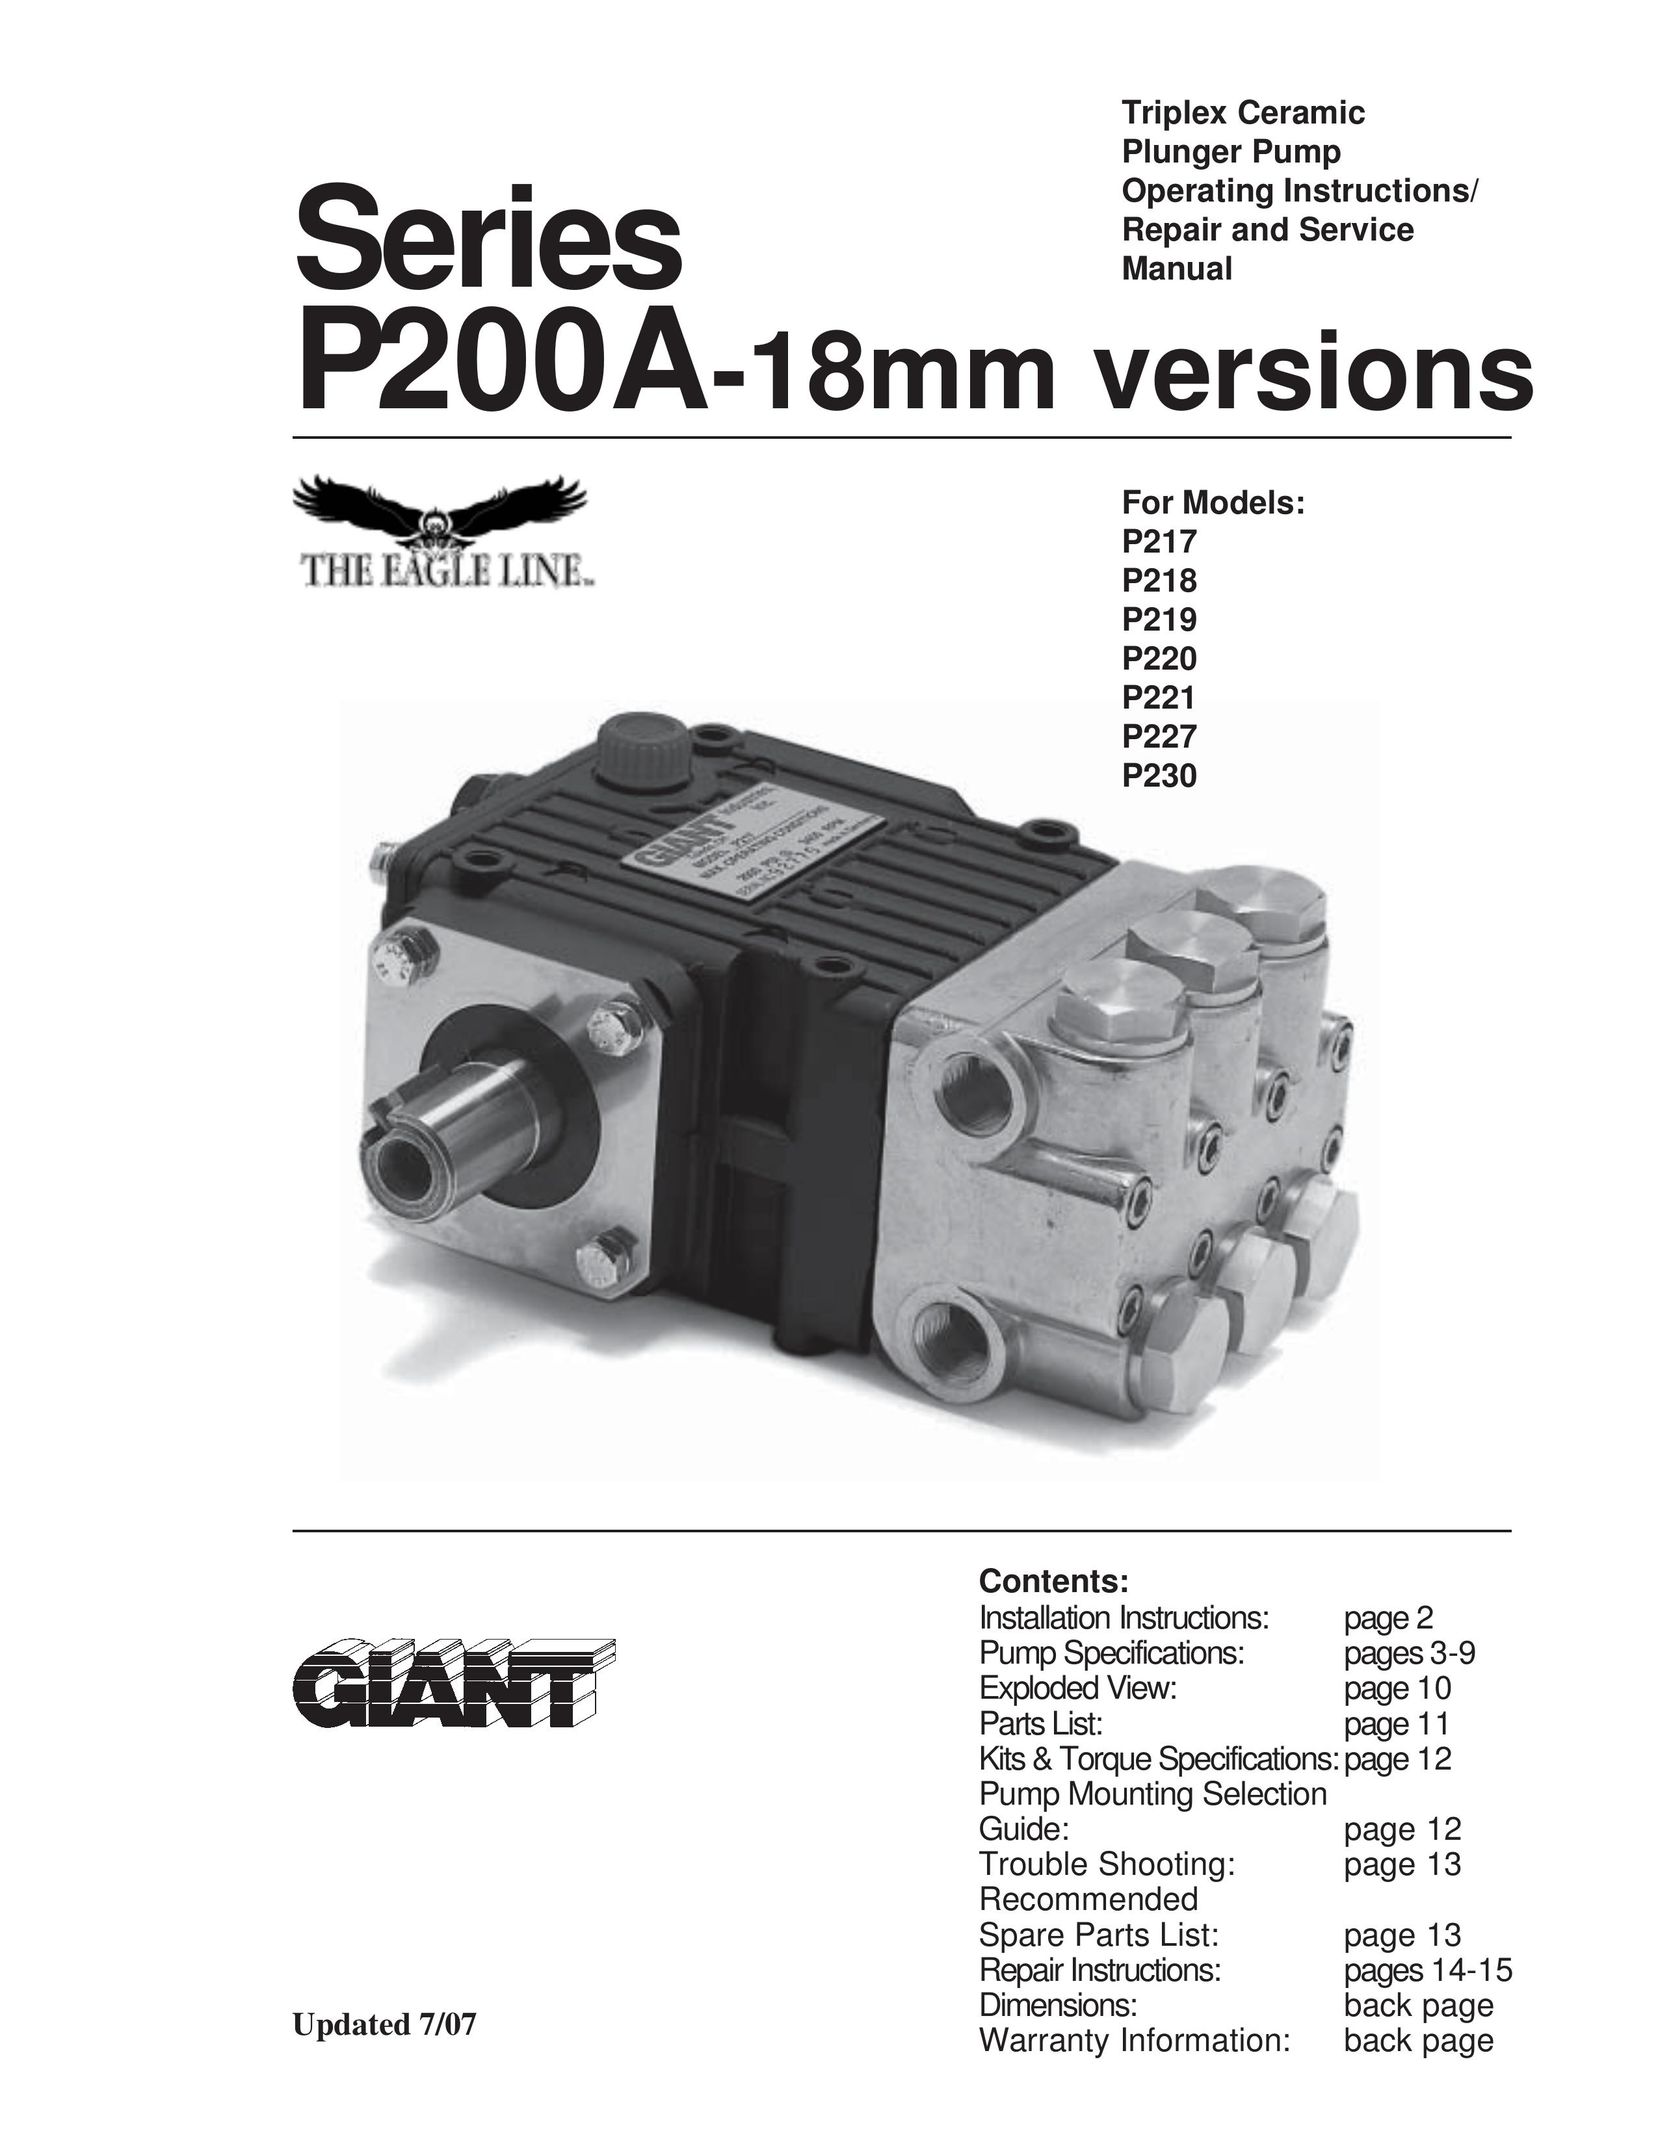 Giant P220 Water Pump User Manual